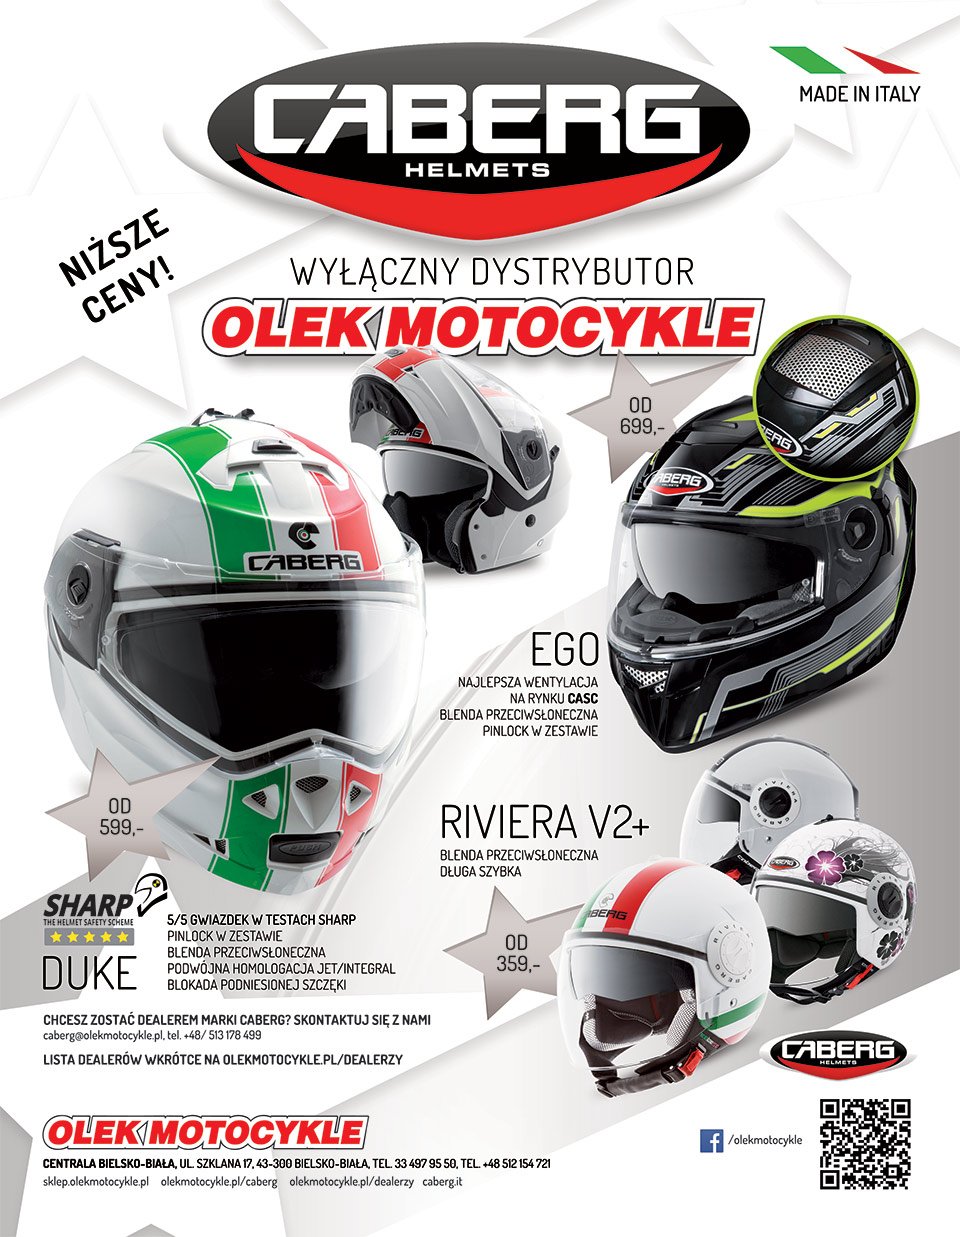 Wyłącznym dystrybutor marki Caberg Olek Motocykle